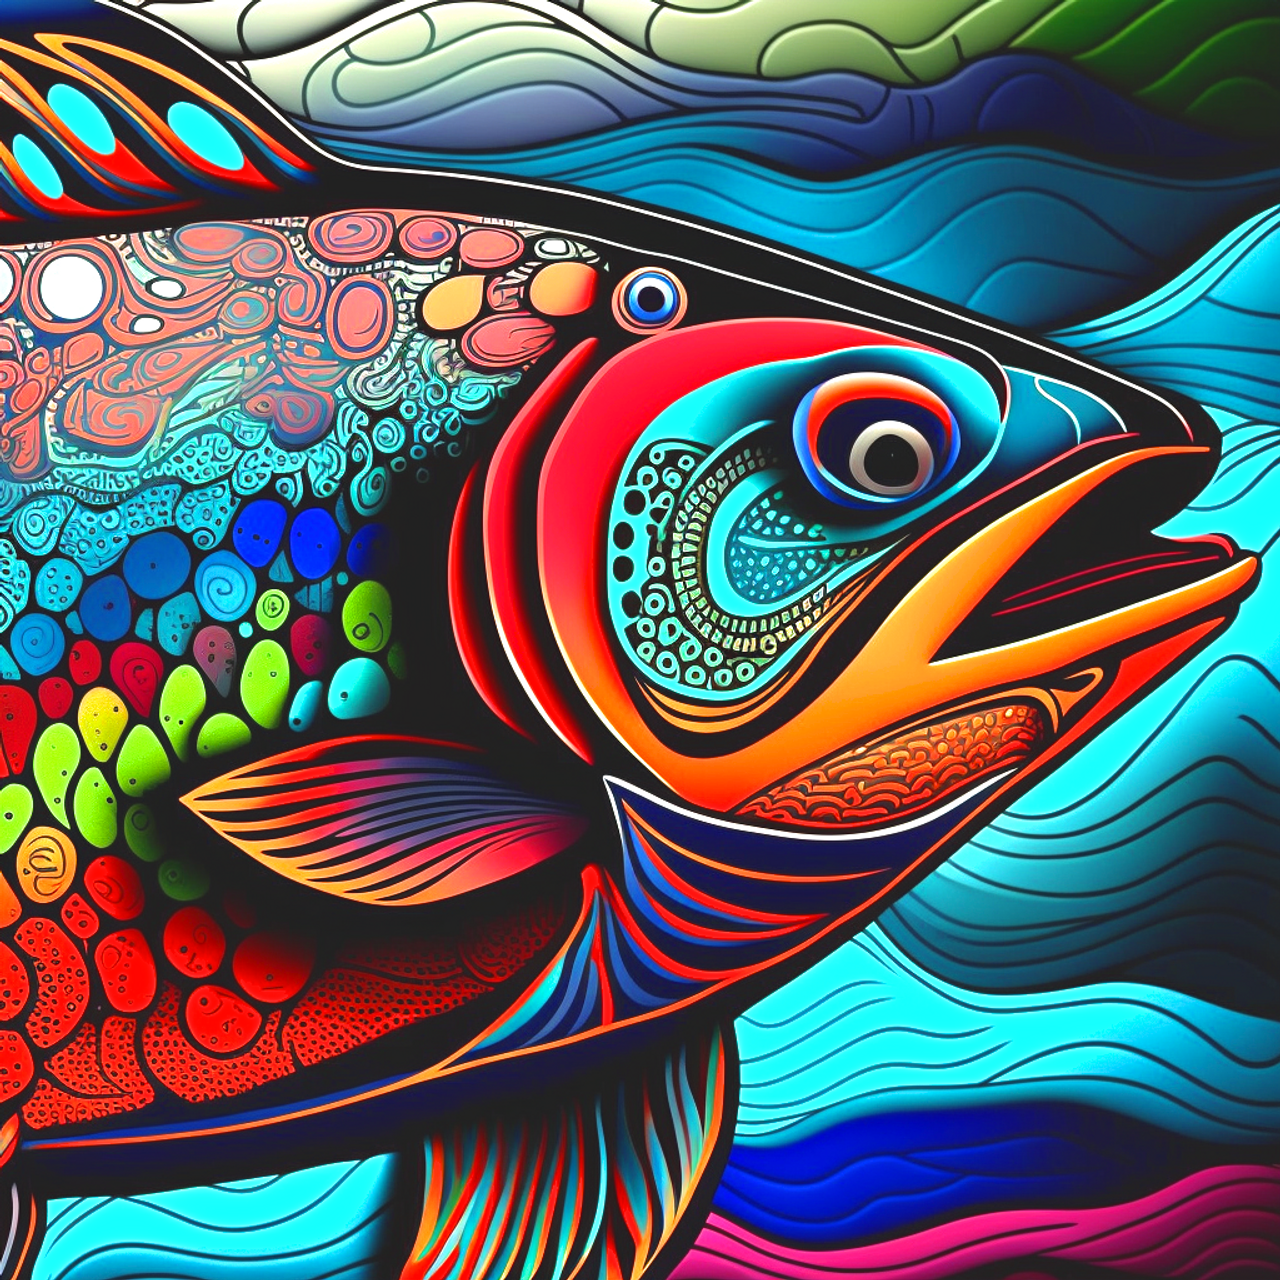 5D Diamond Painting Abstract Rainbow Fish Design Kit - Bonanza